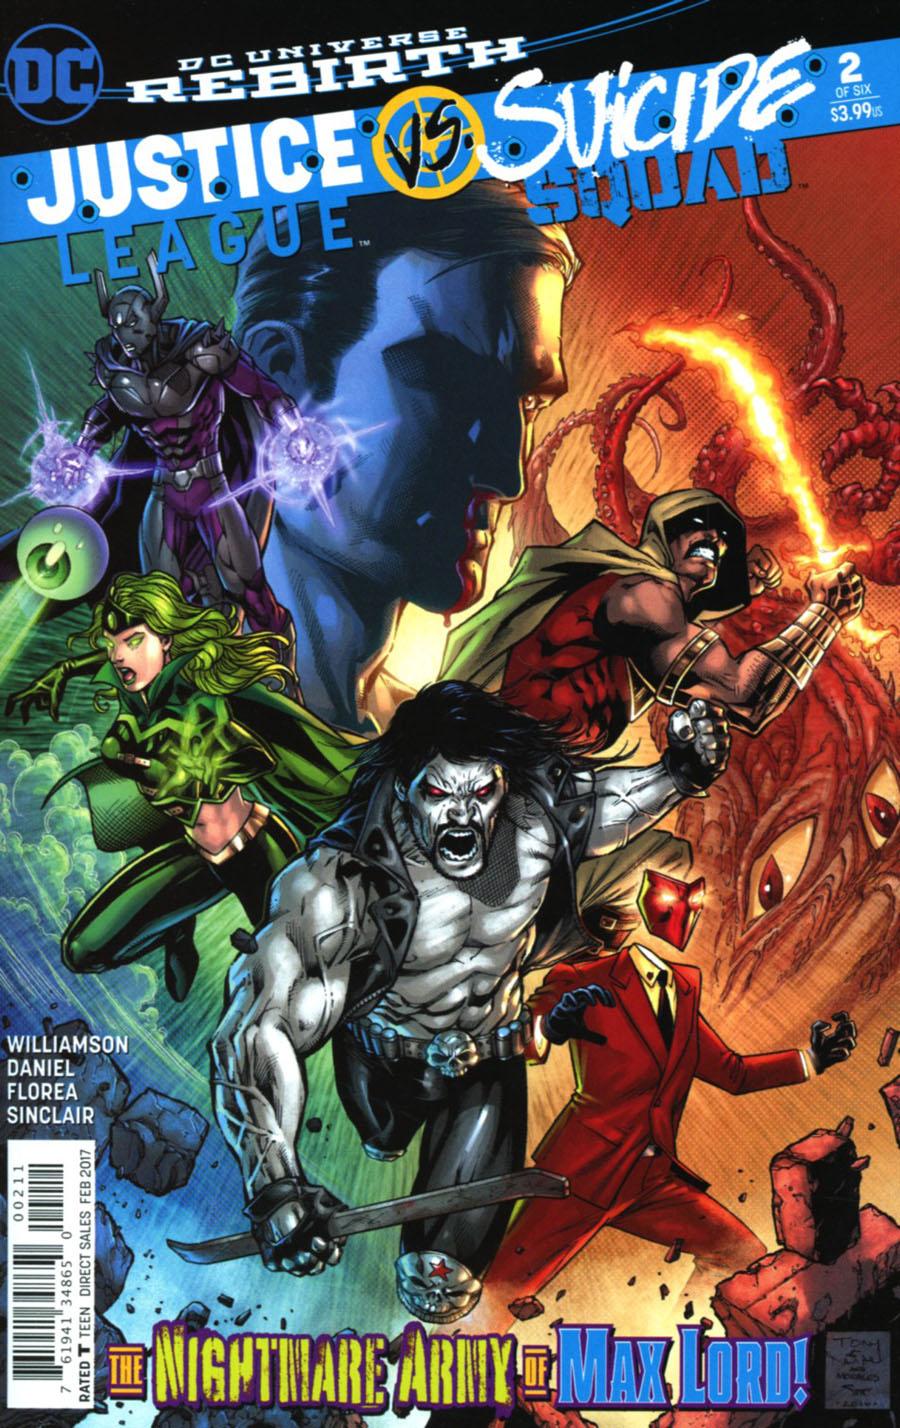 Justice League vs Suicide Squad Vol. 1 #2